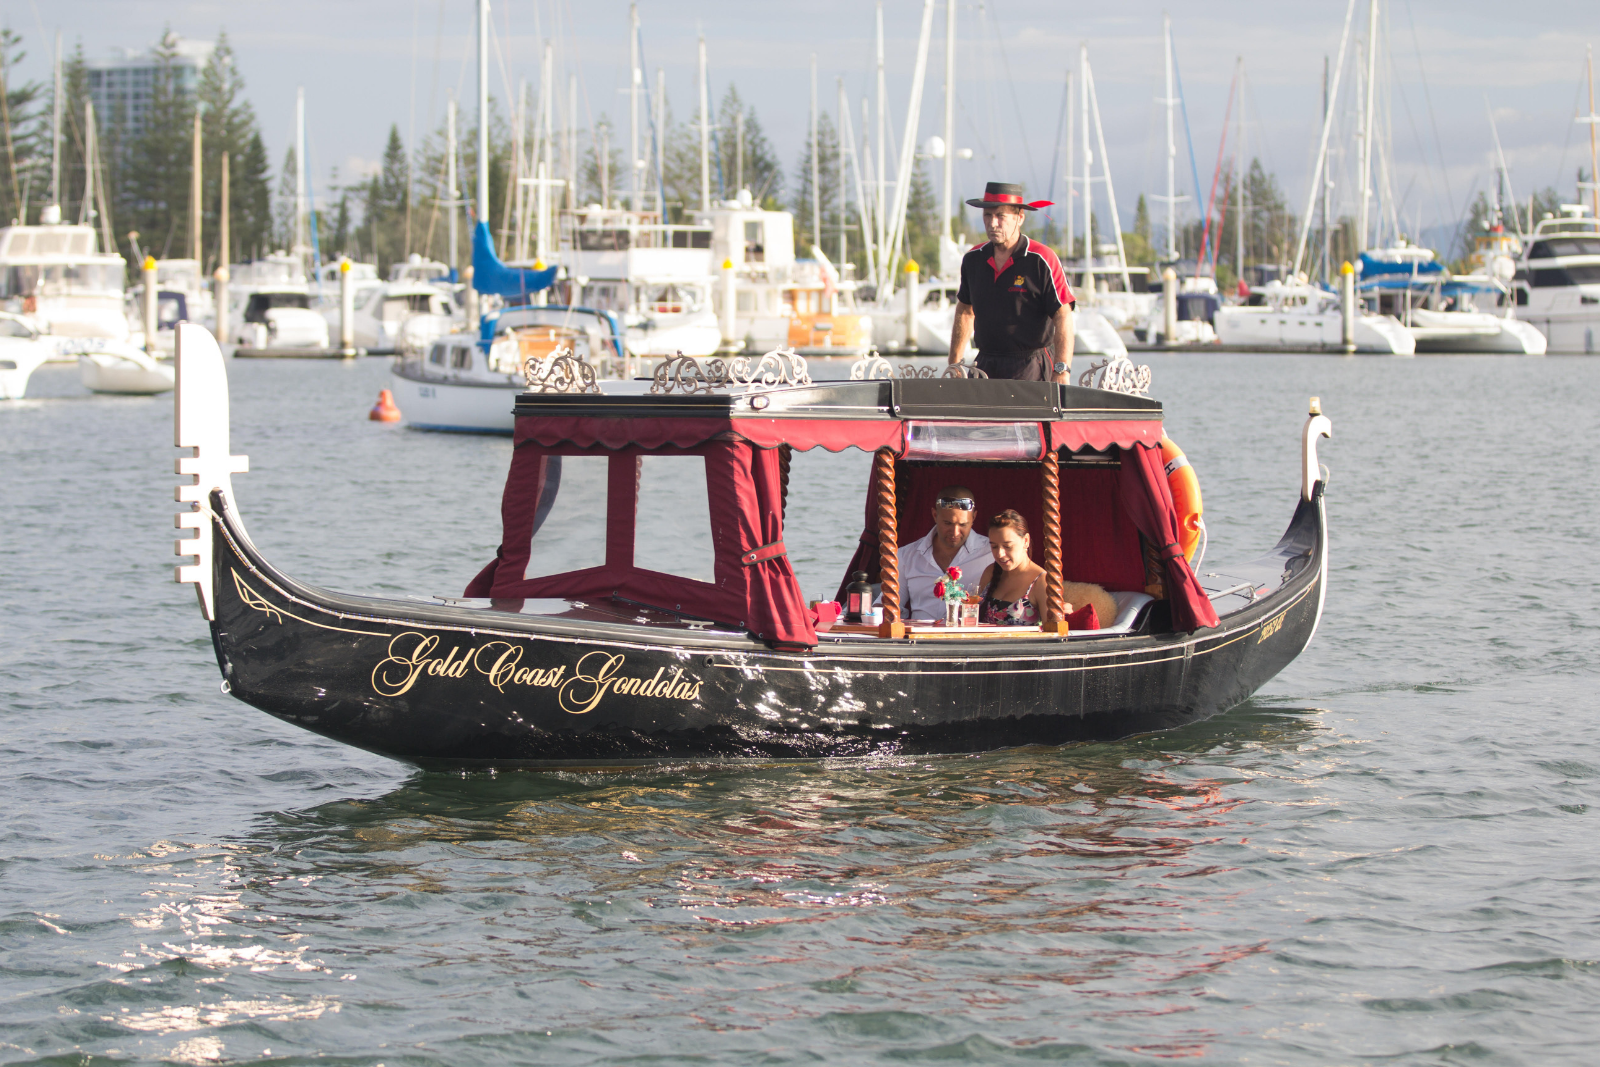 Floatin’ fun with Gold Coast Gondolas